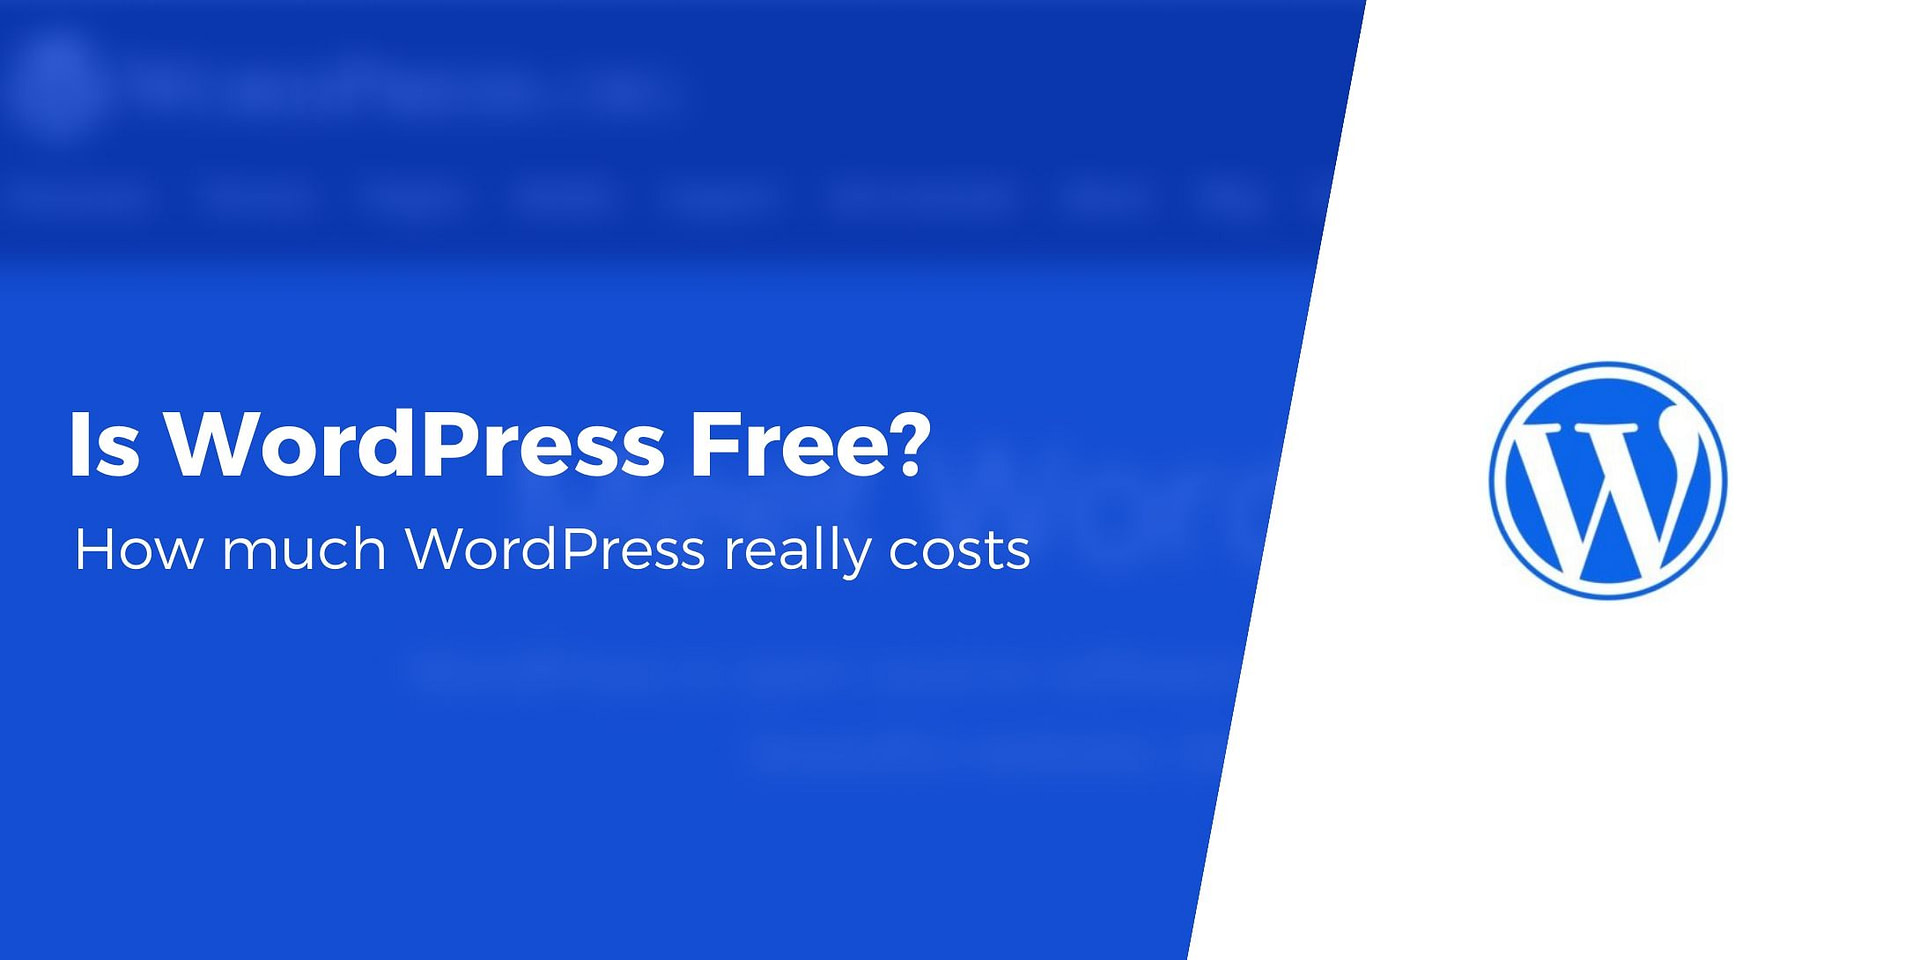 Is WordPress still free?